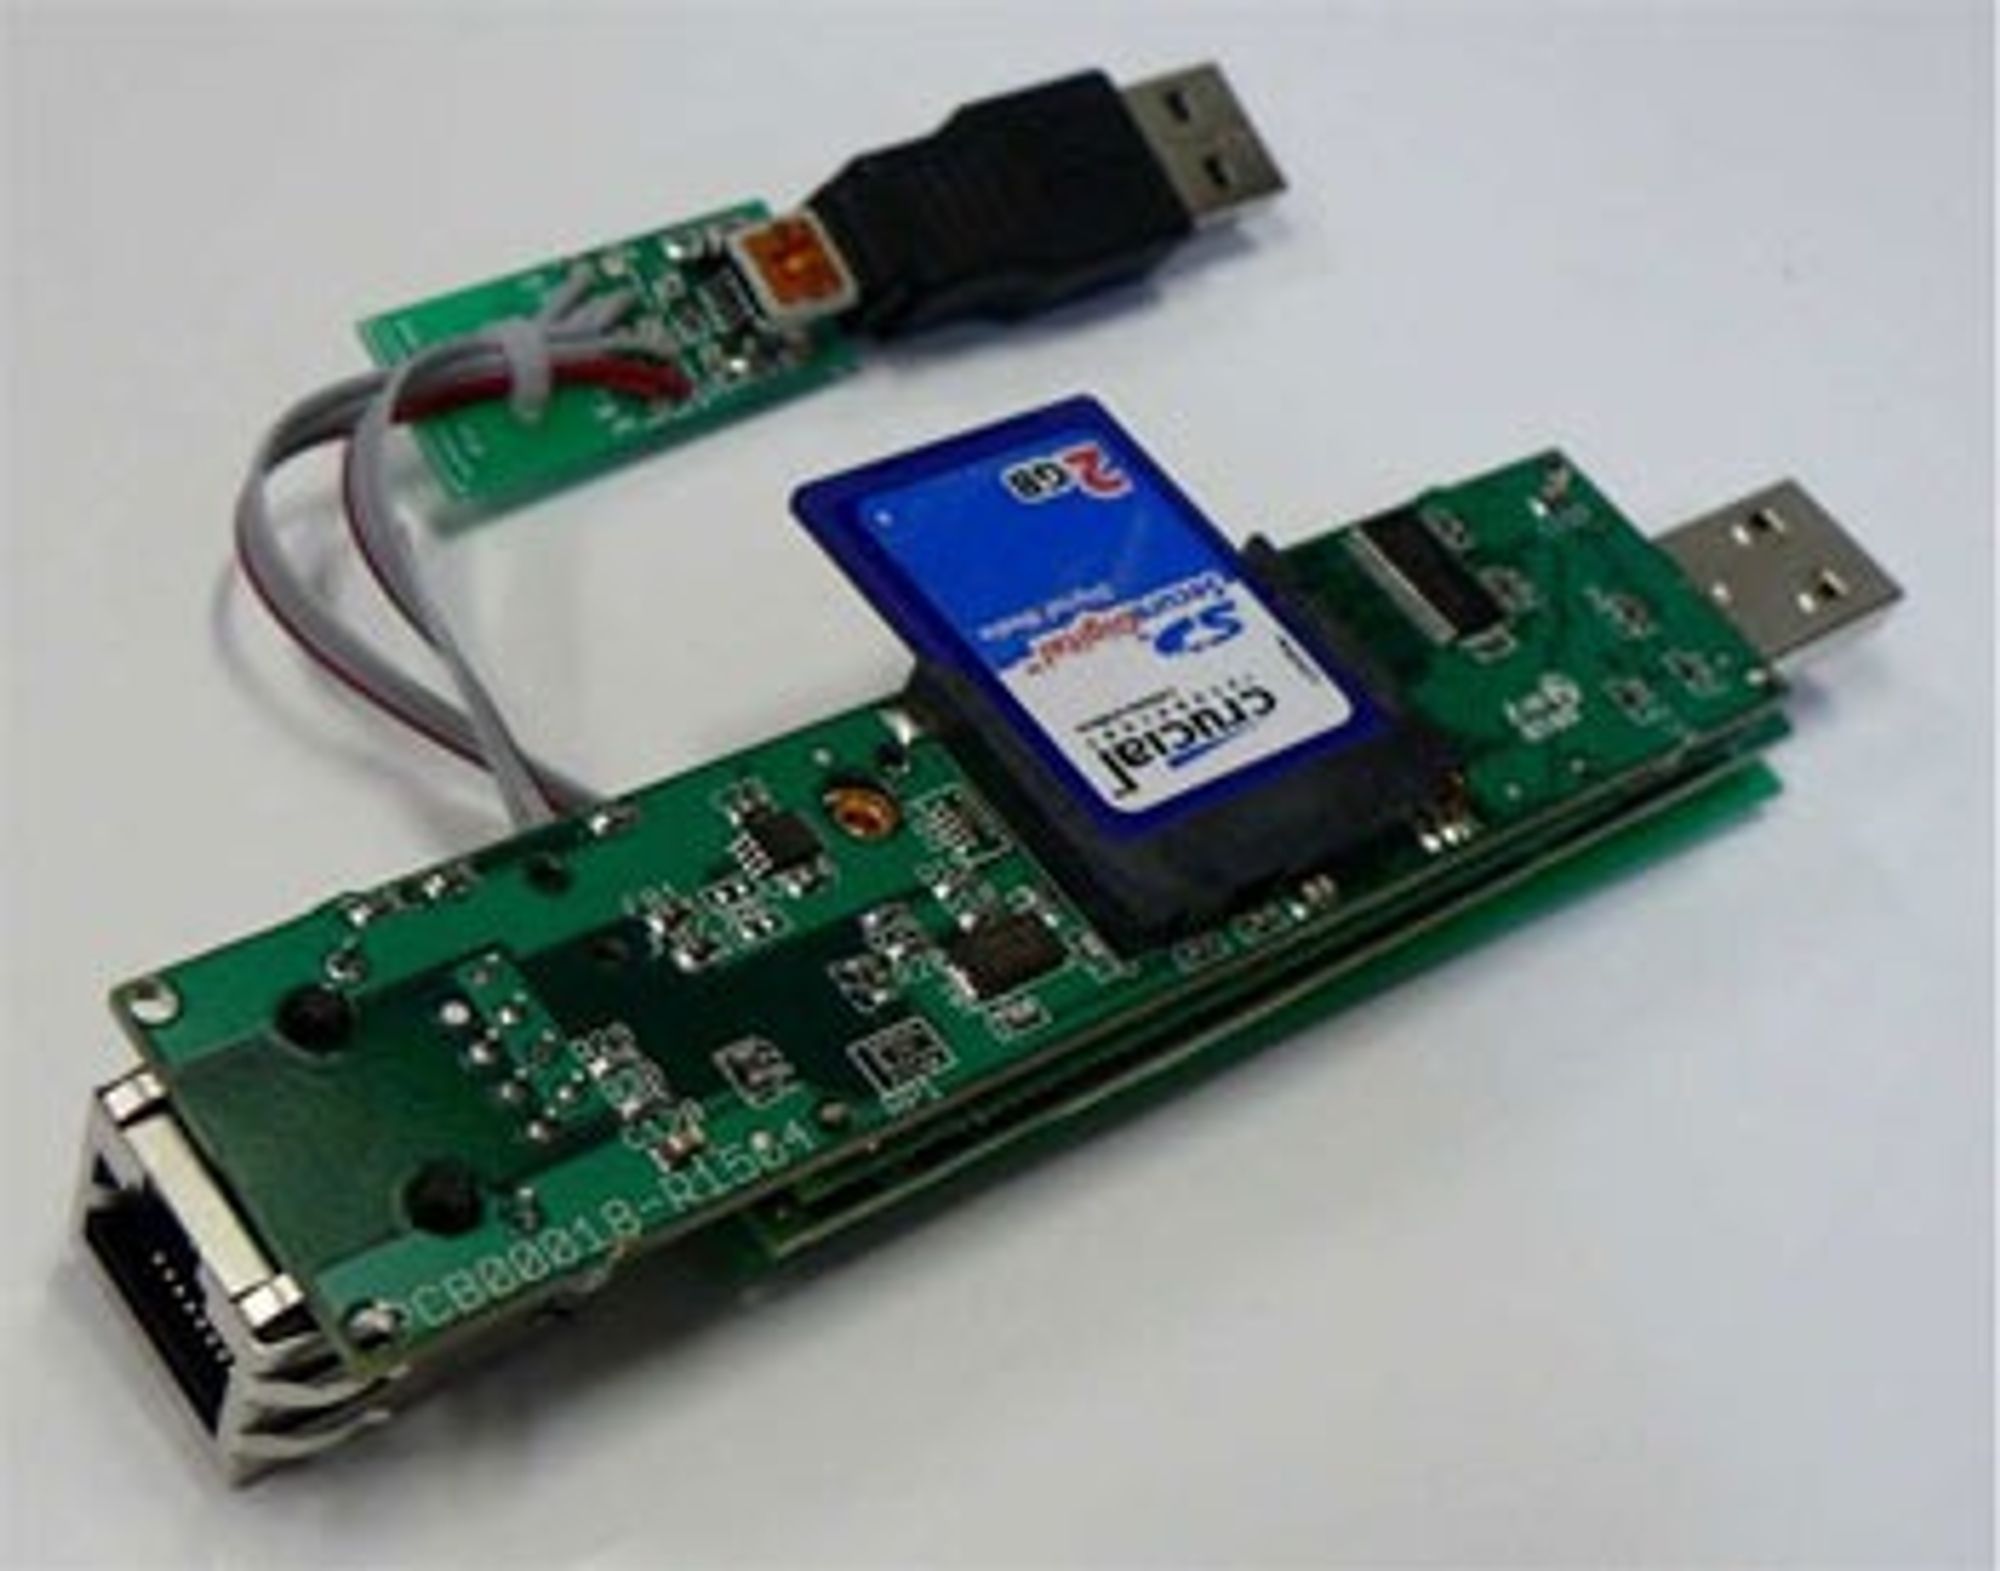 Prototypen på Somniloquy er realisert som en USB-enhet med SD-minne og Ethernet-utgang. Arkitekturen kan også realiseres som vanlige nettverkskort og som WLAN-kort.